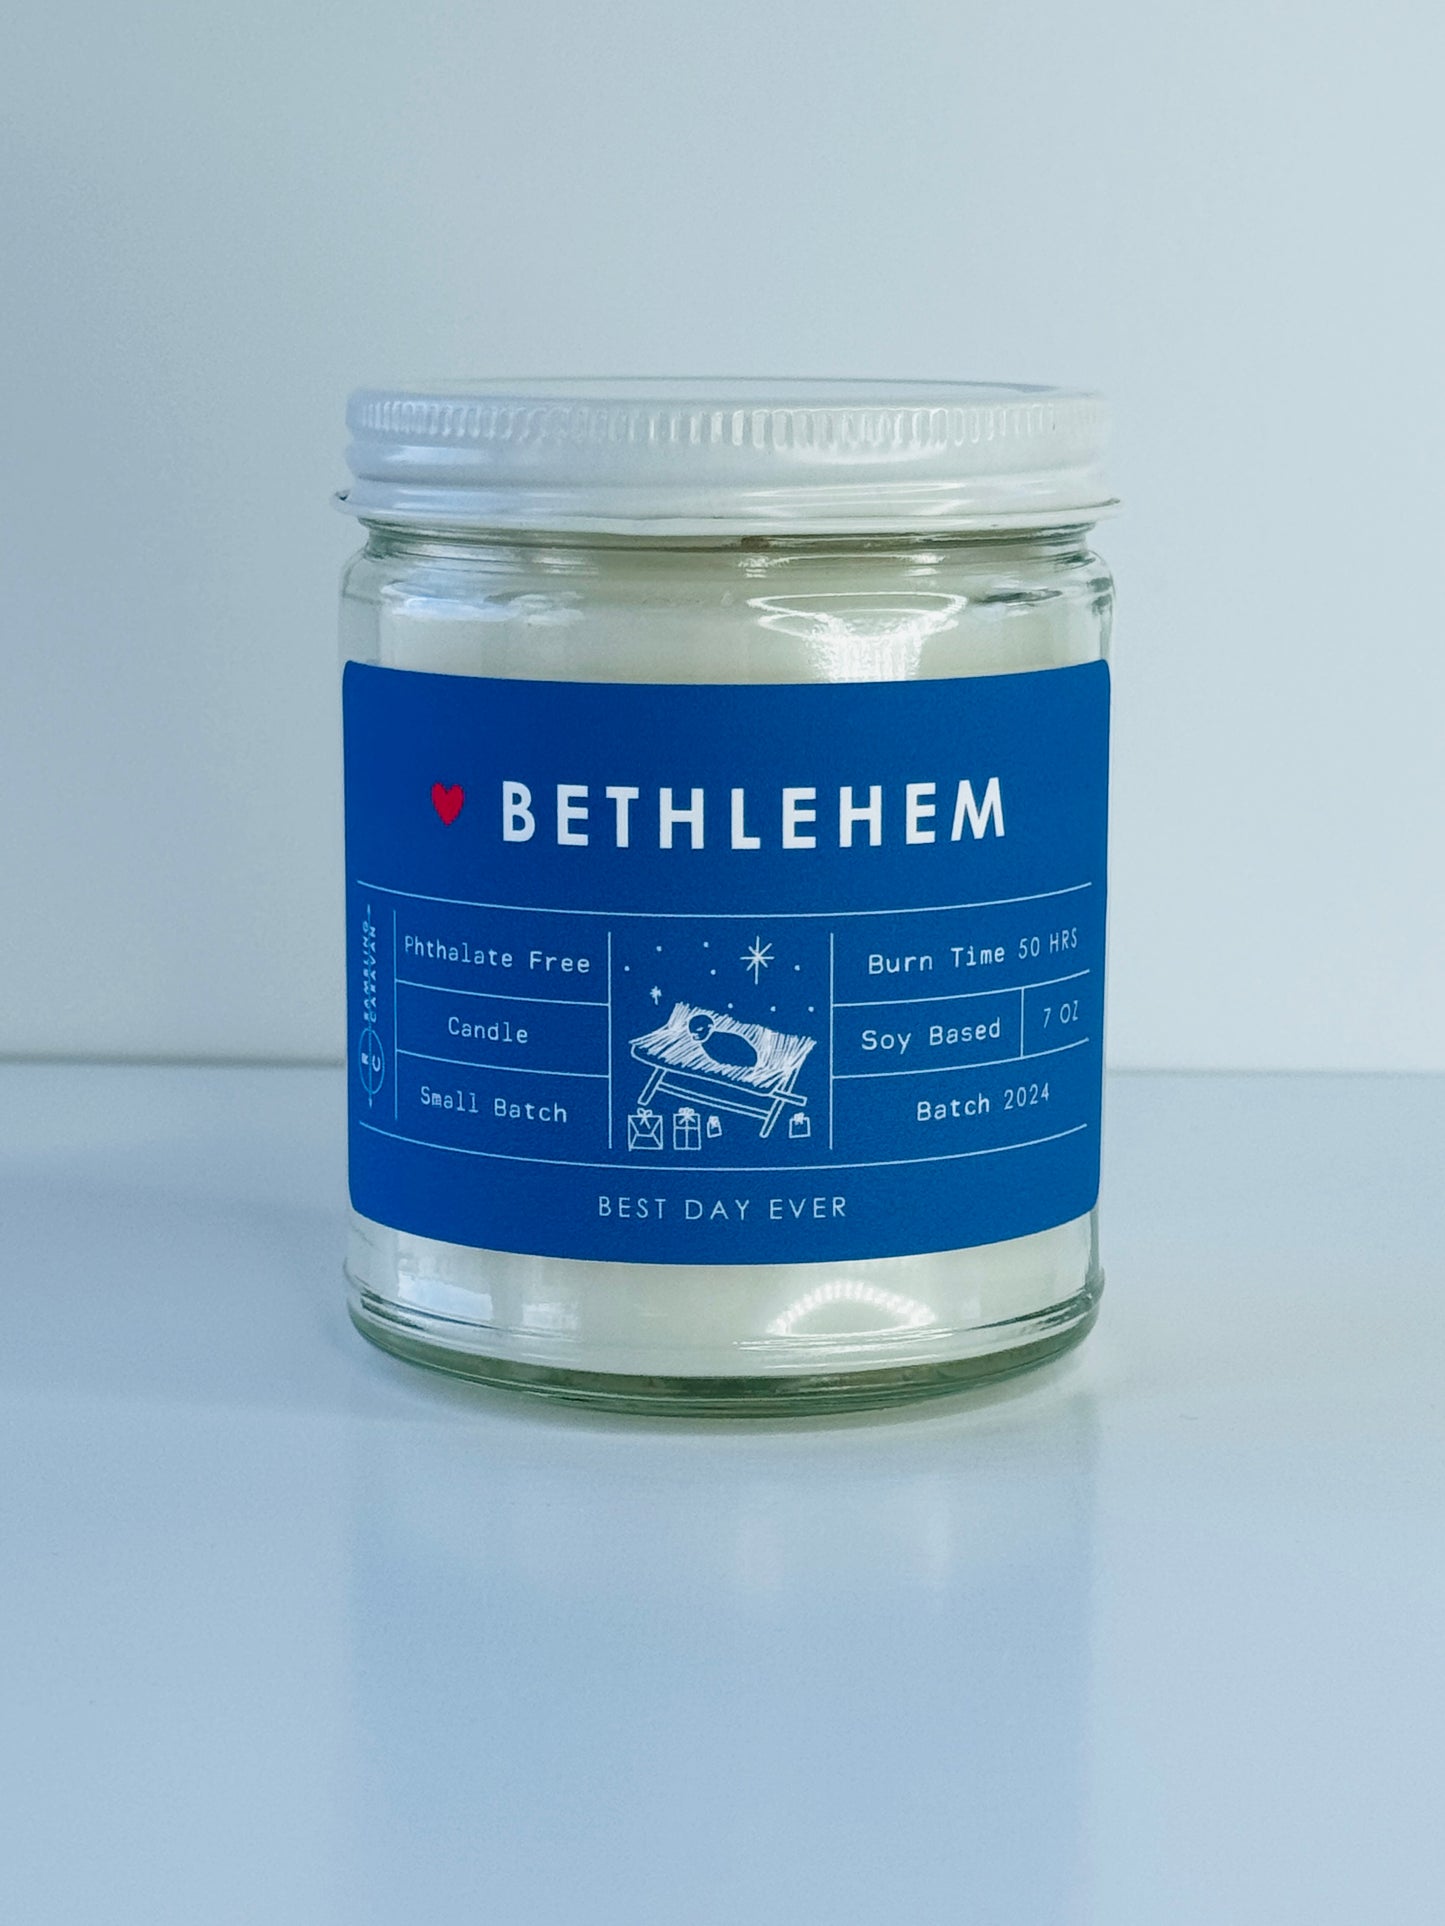 Bethlehem Candle